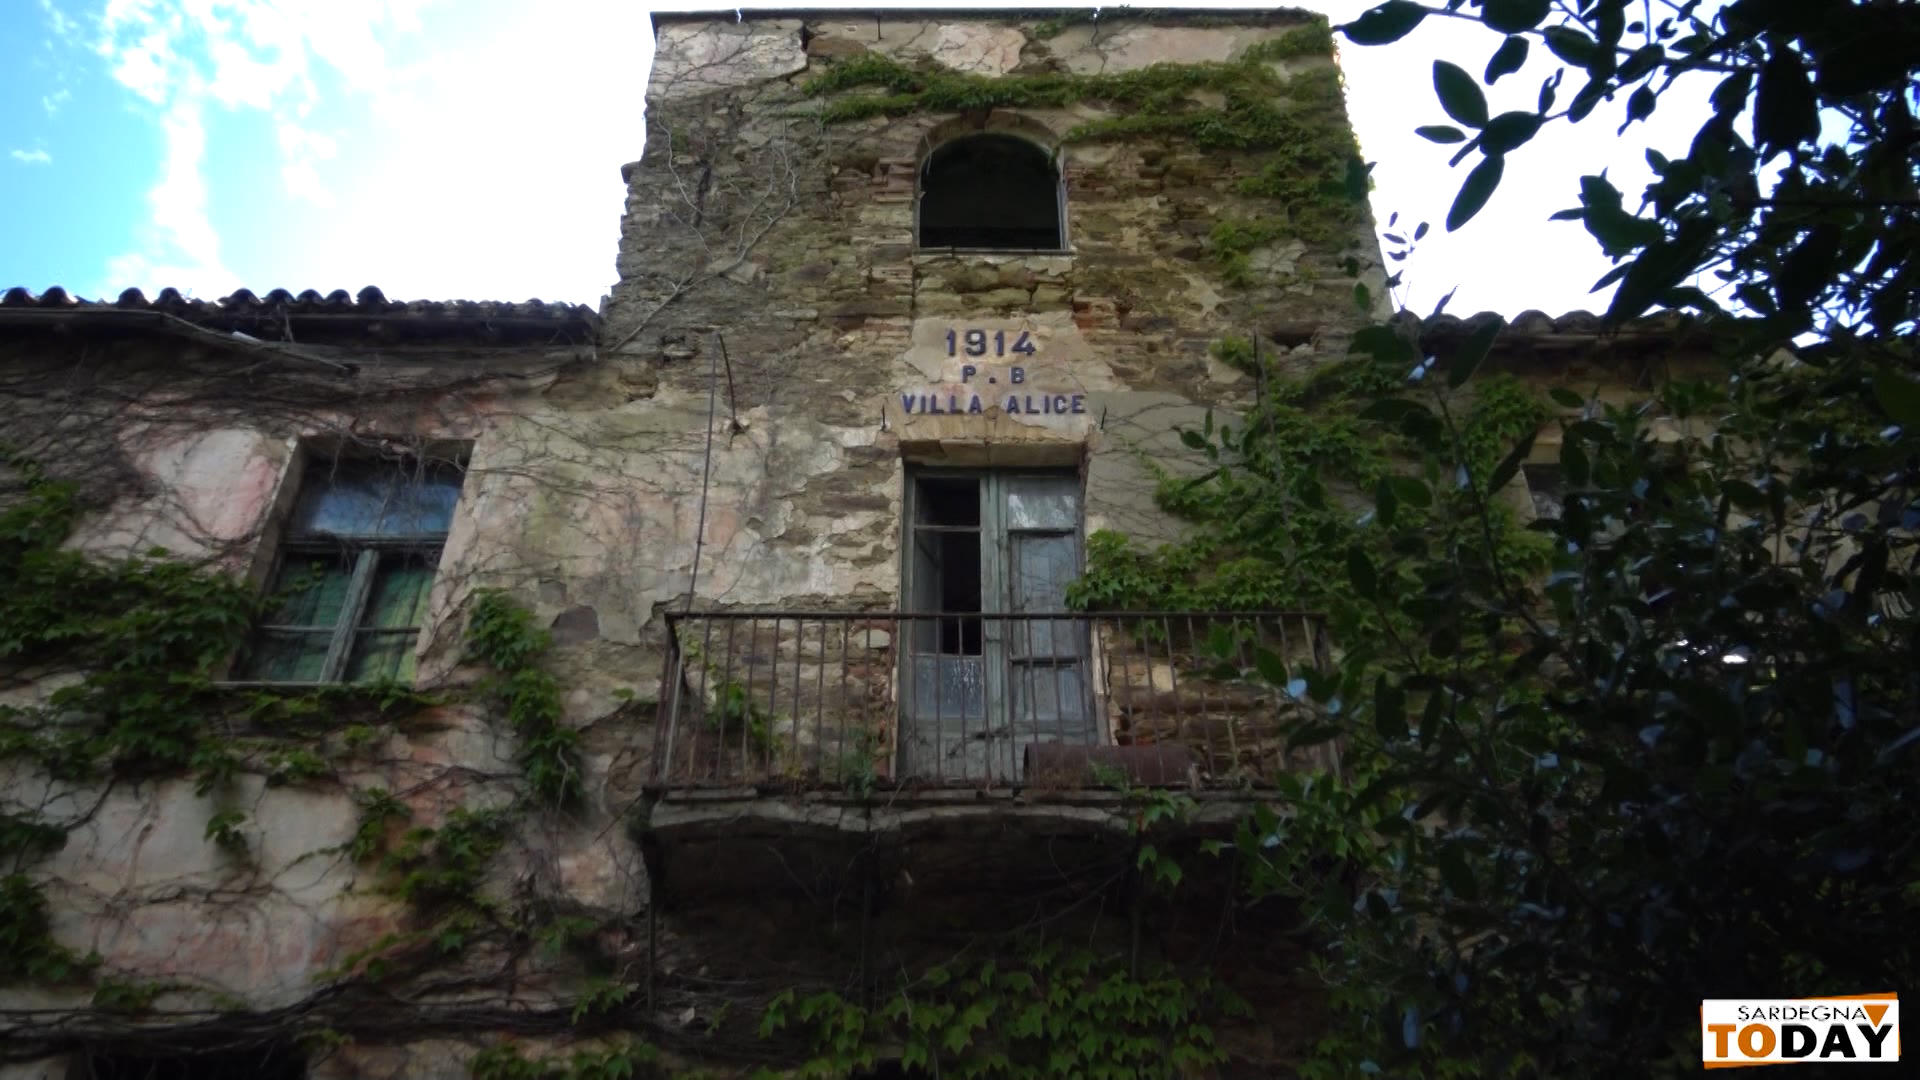 VILLA ALICE: La dimora padronale nel borgo incantato tanto amato dal pittore Modigliani